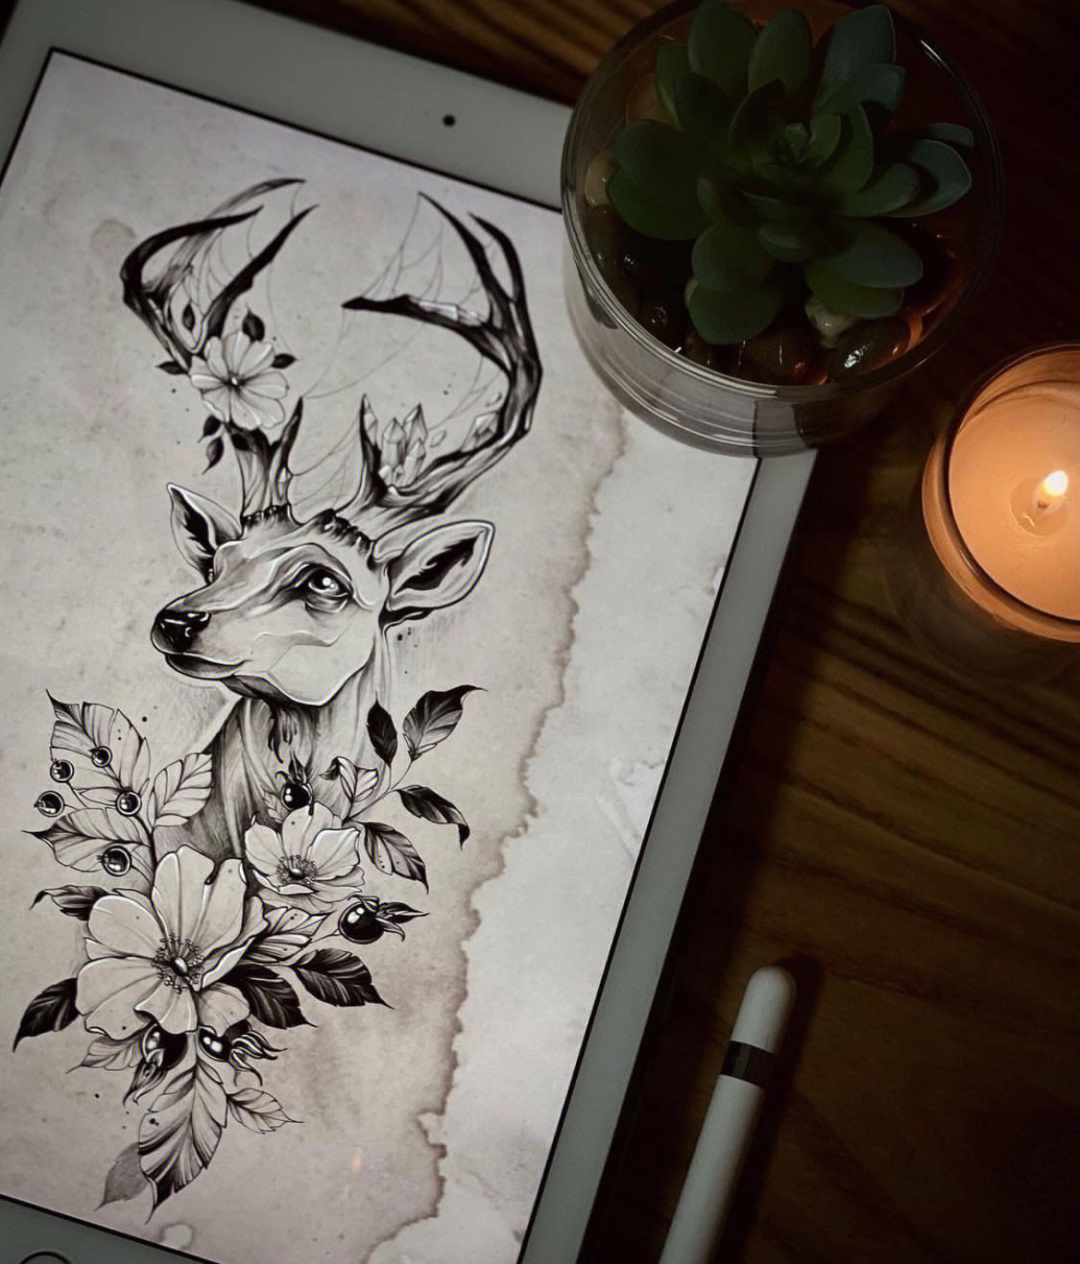 水墨鹿纹身图案手稿图片